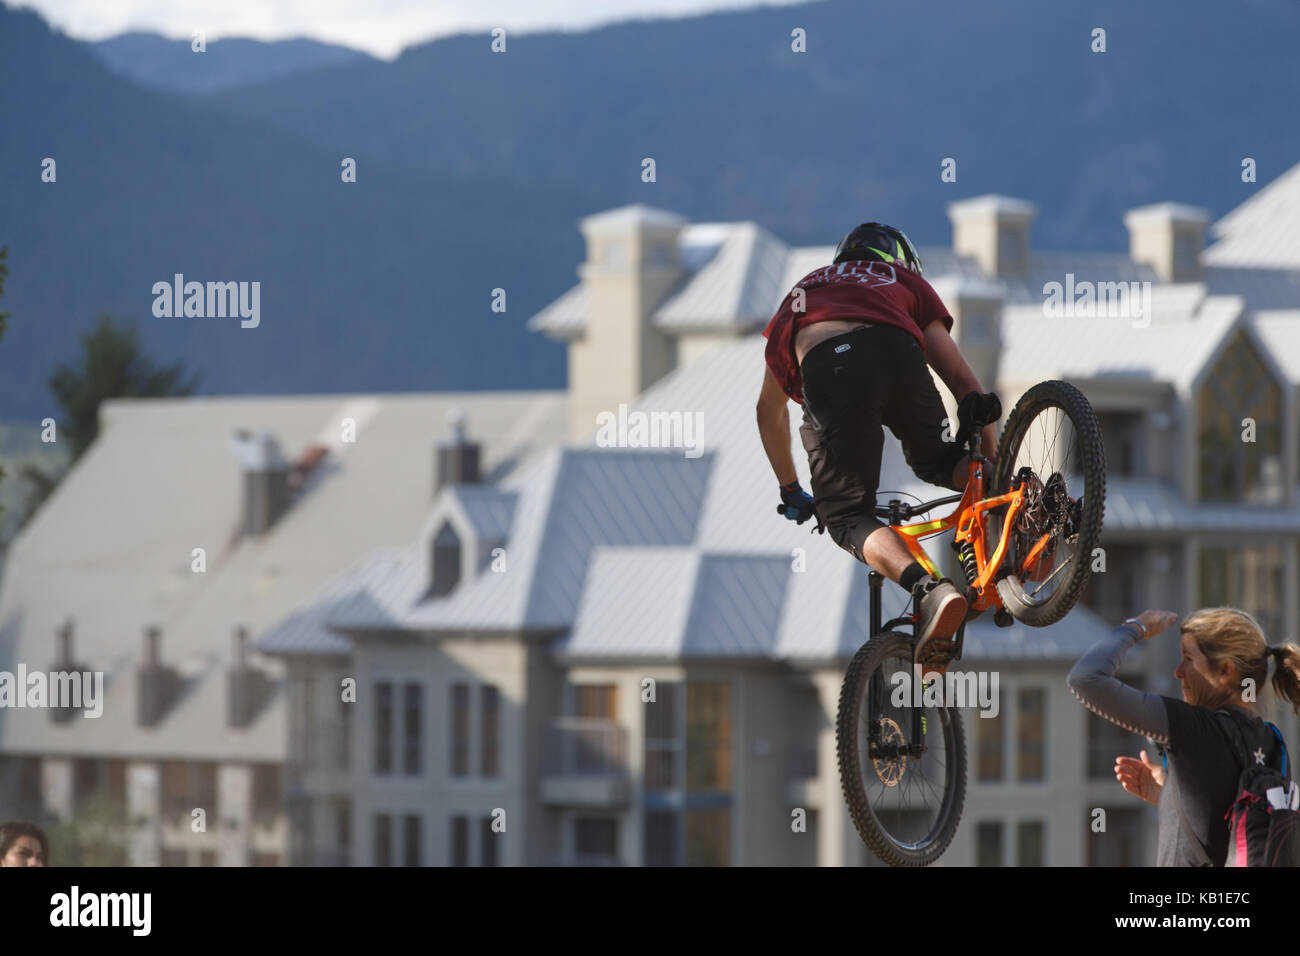 Avec un spectateur à la recherche sur un vélo de montagne captures l'air sur la ligne une piste à Whistler Resort. Whistler (Colombie-Britannique), le 13 août 2017. Banque D'Images